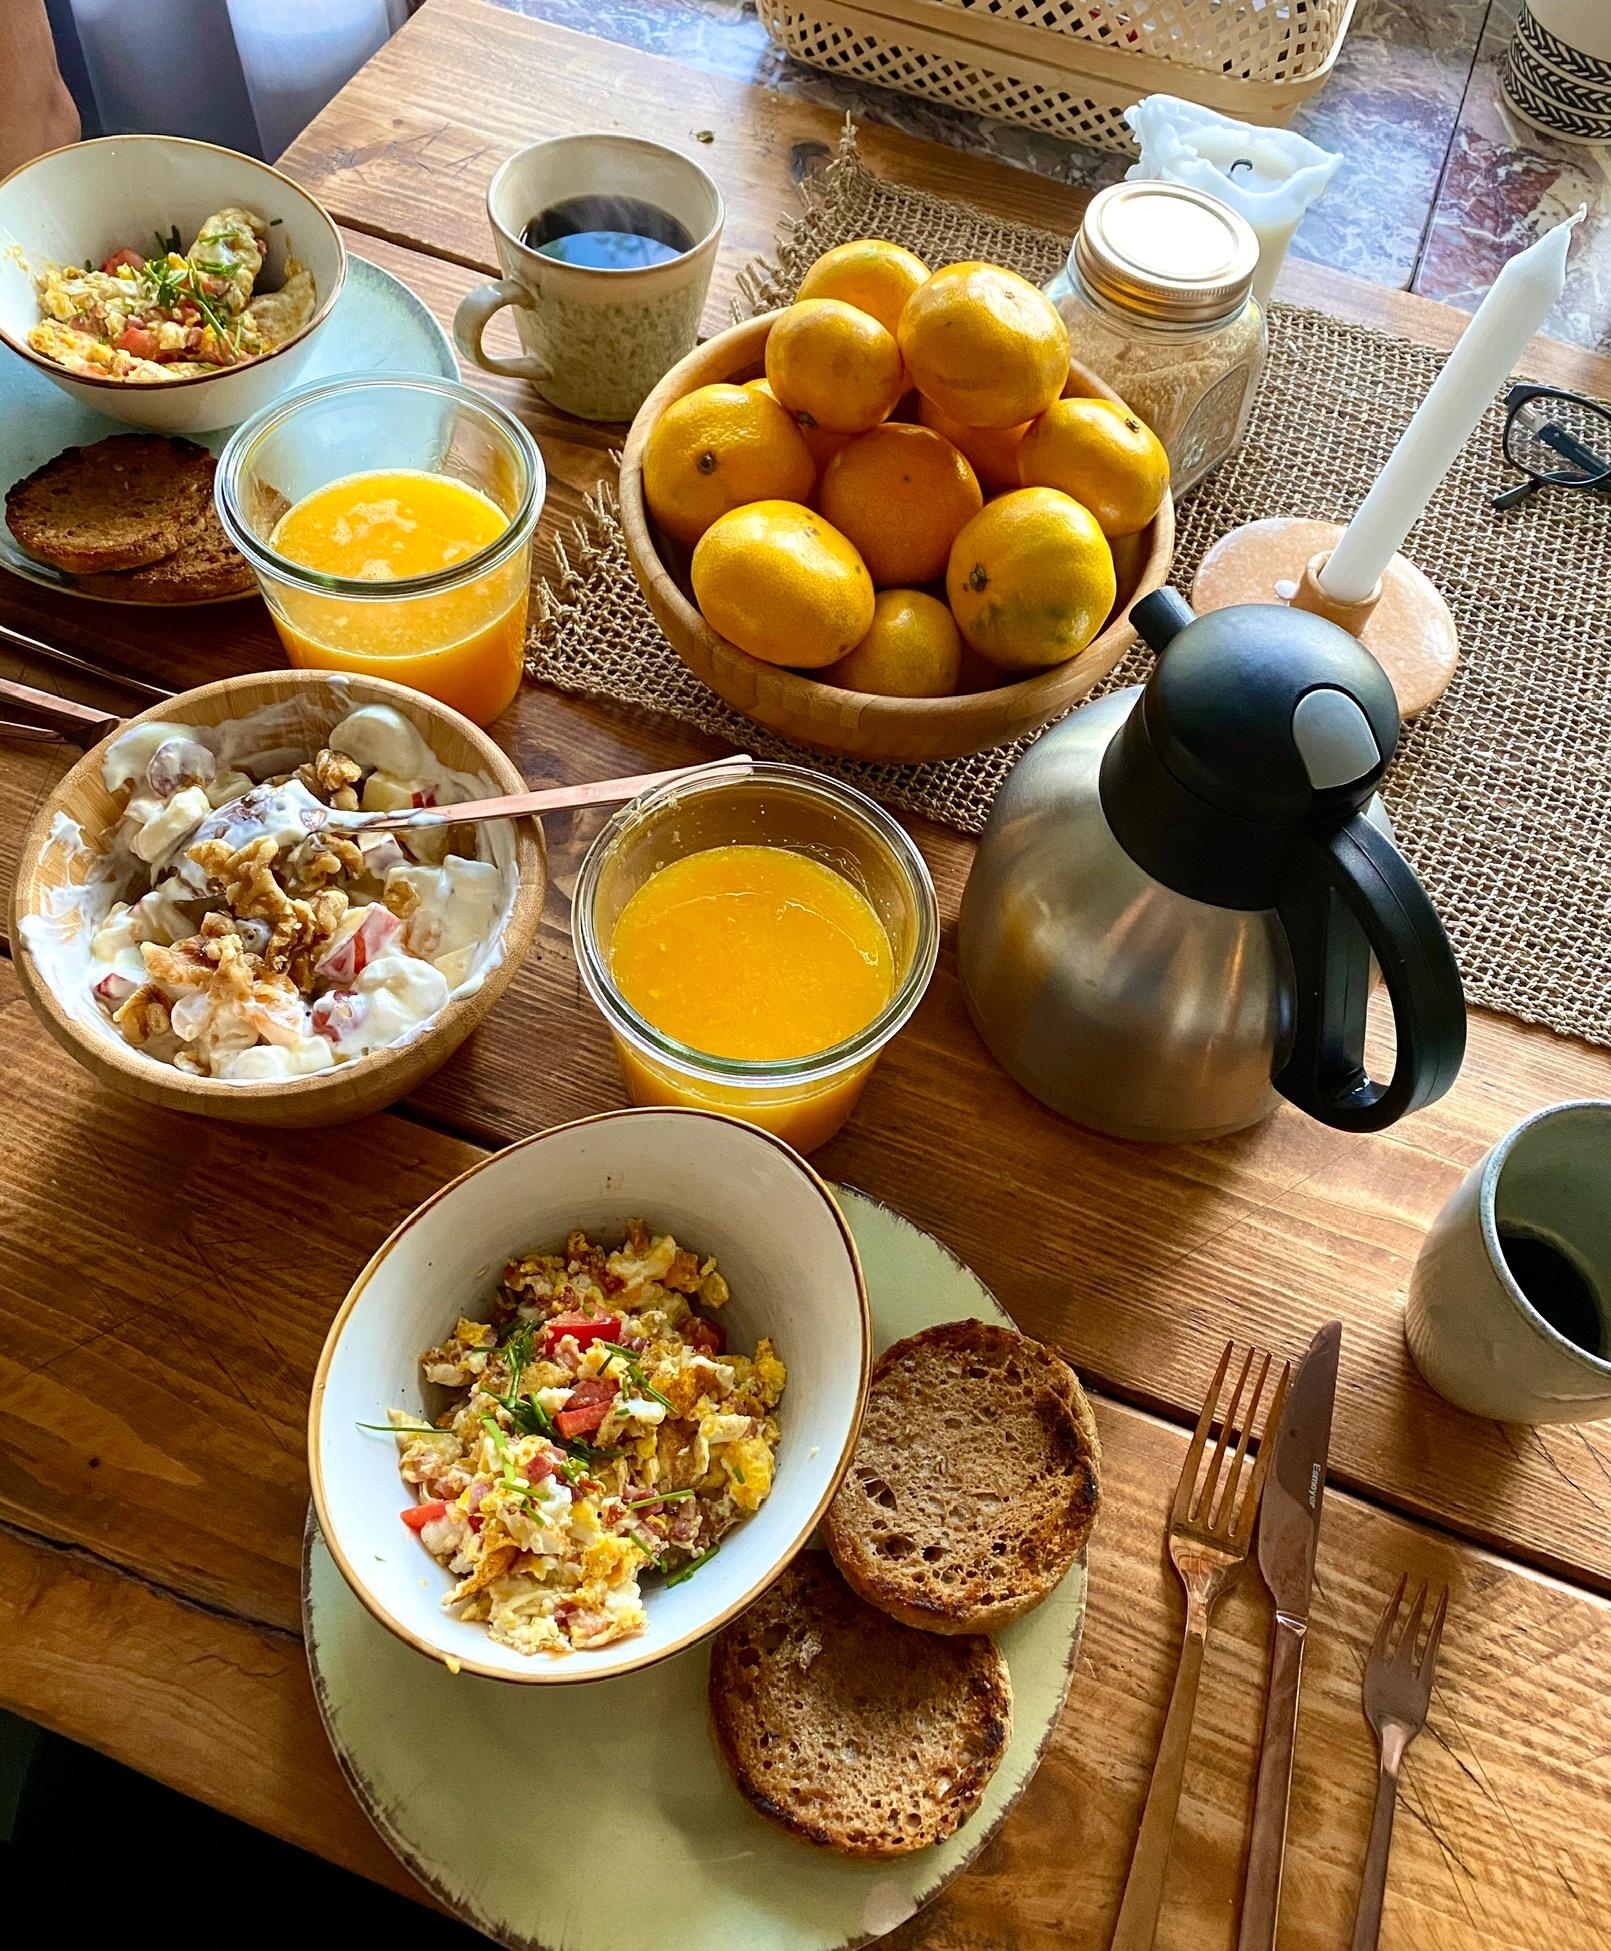 #foodchallenge #frühstückstisch
Das kleine sonntagsfrühstück